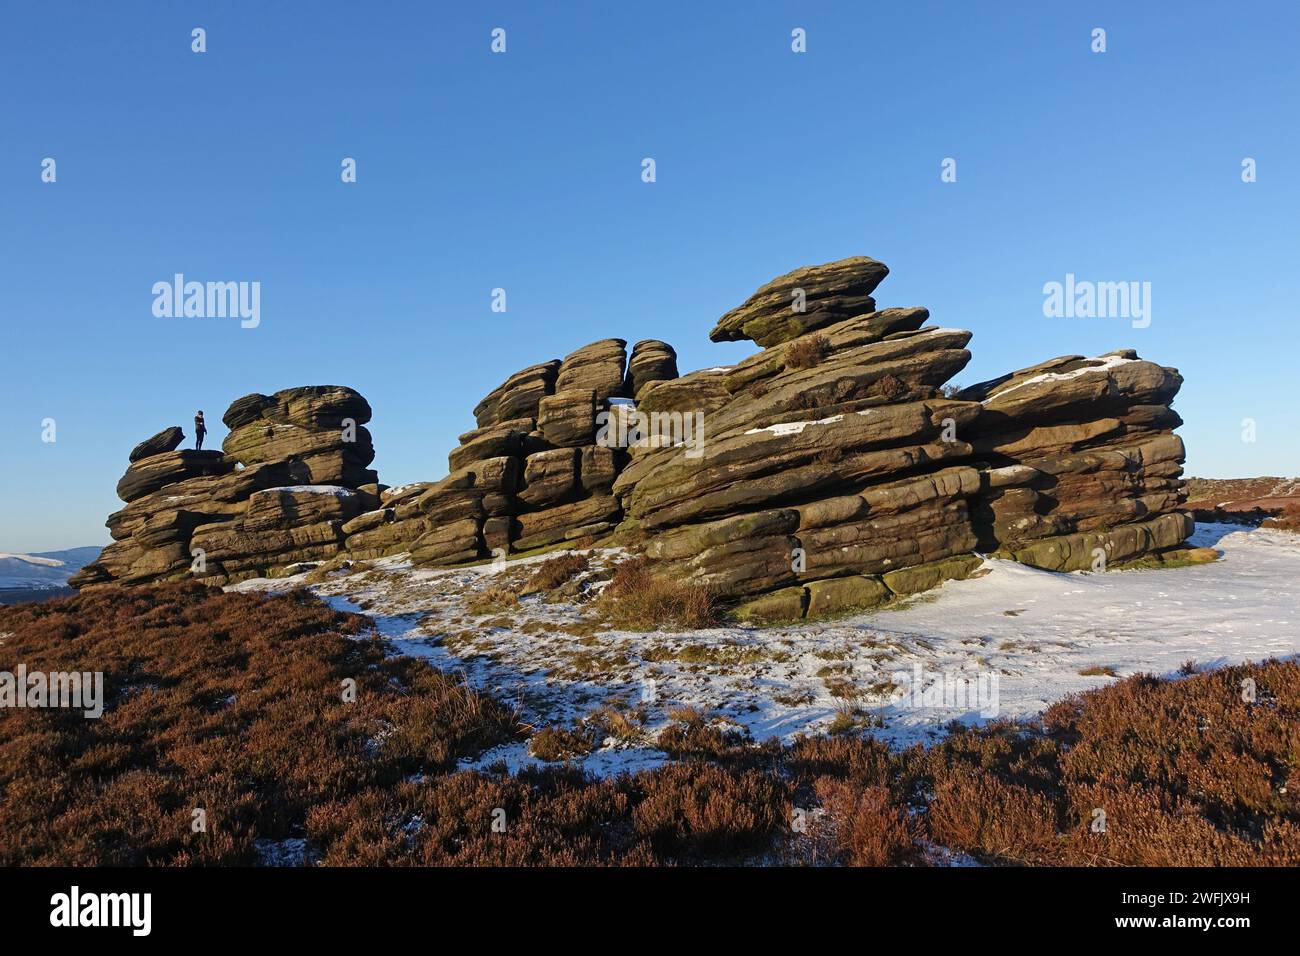 The Wheel Stones, également connu sous le nom de The Coach and Horses, une formation rocheuse étonnante sur Derwent Edge, Peak District, Royaume-Uni Banque D'Images